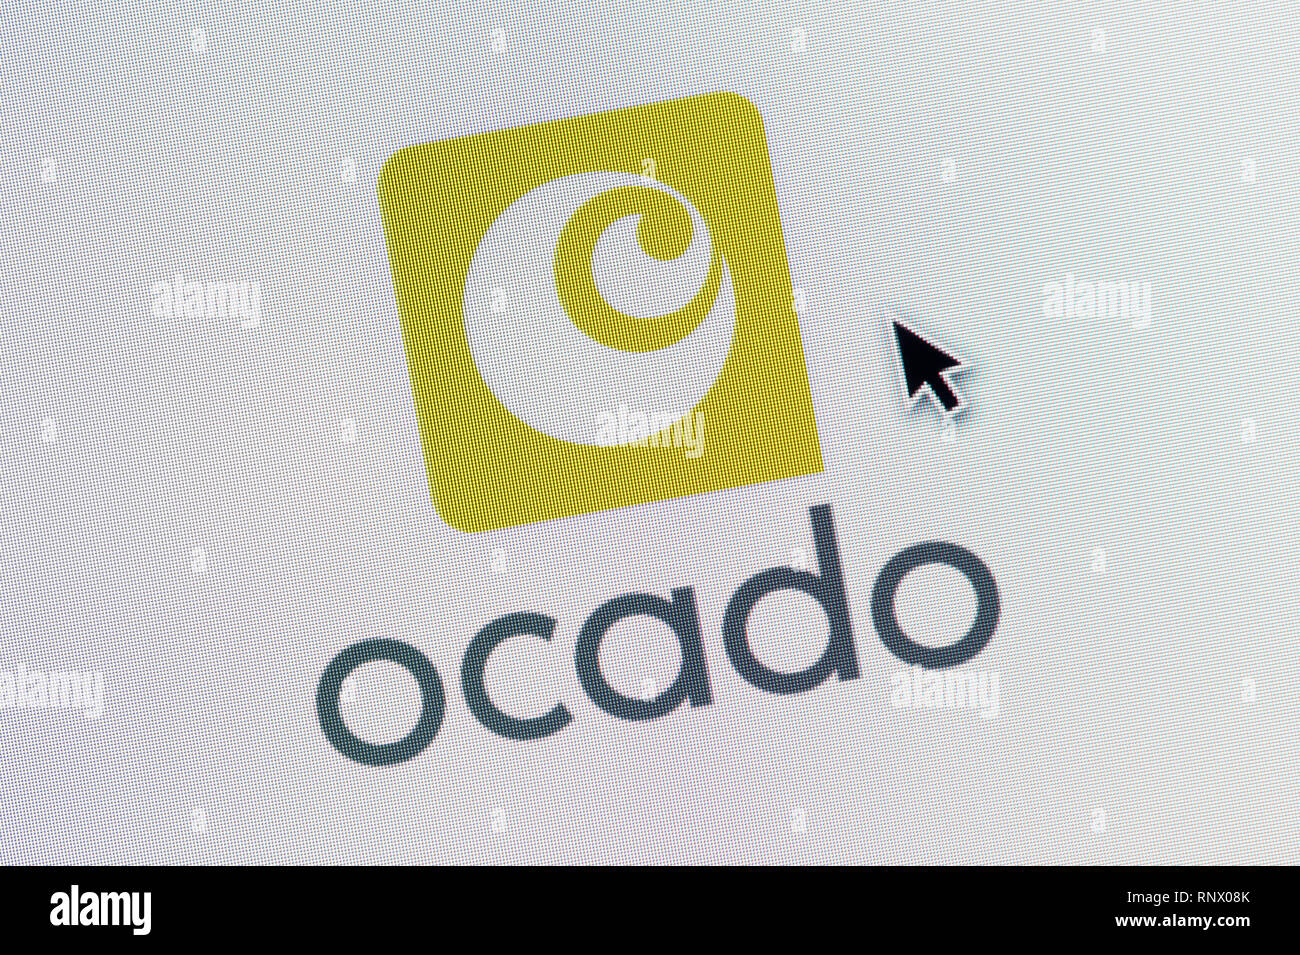 Das Logo von ocado ist auf einem Bildschirm gesehen zusammen mit einer Maus Cursor (nur redaktionelle Nutzung) Stockfoto